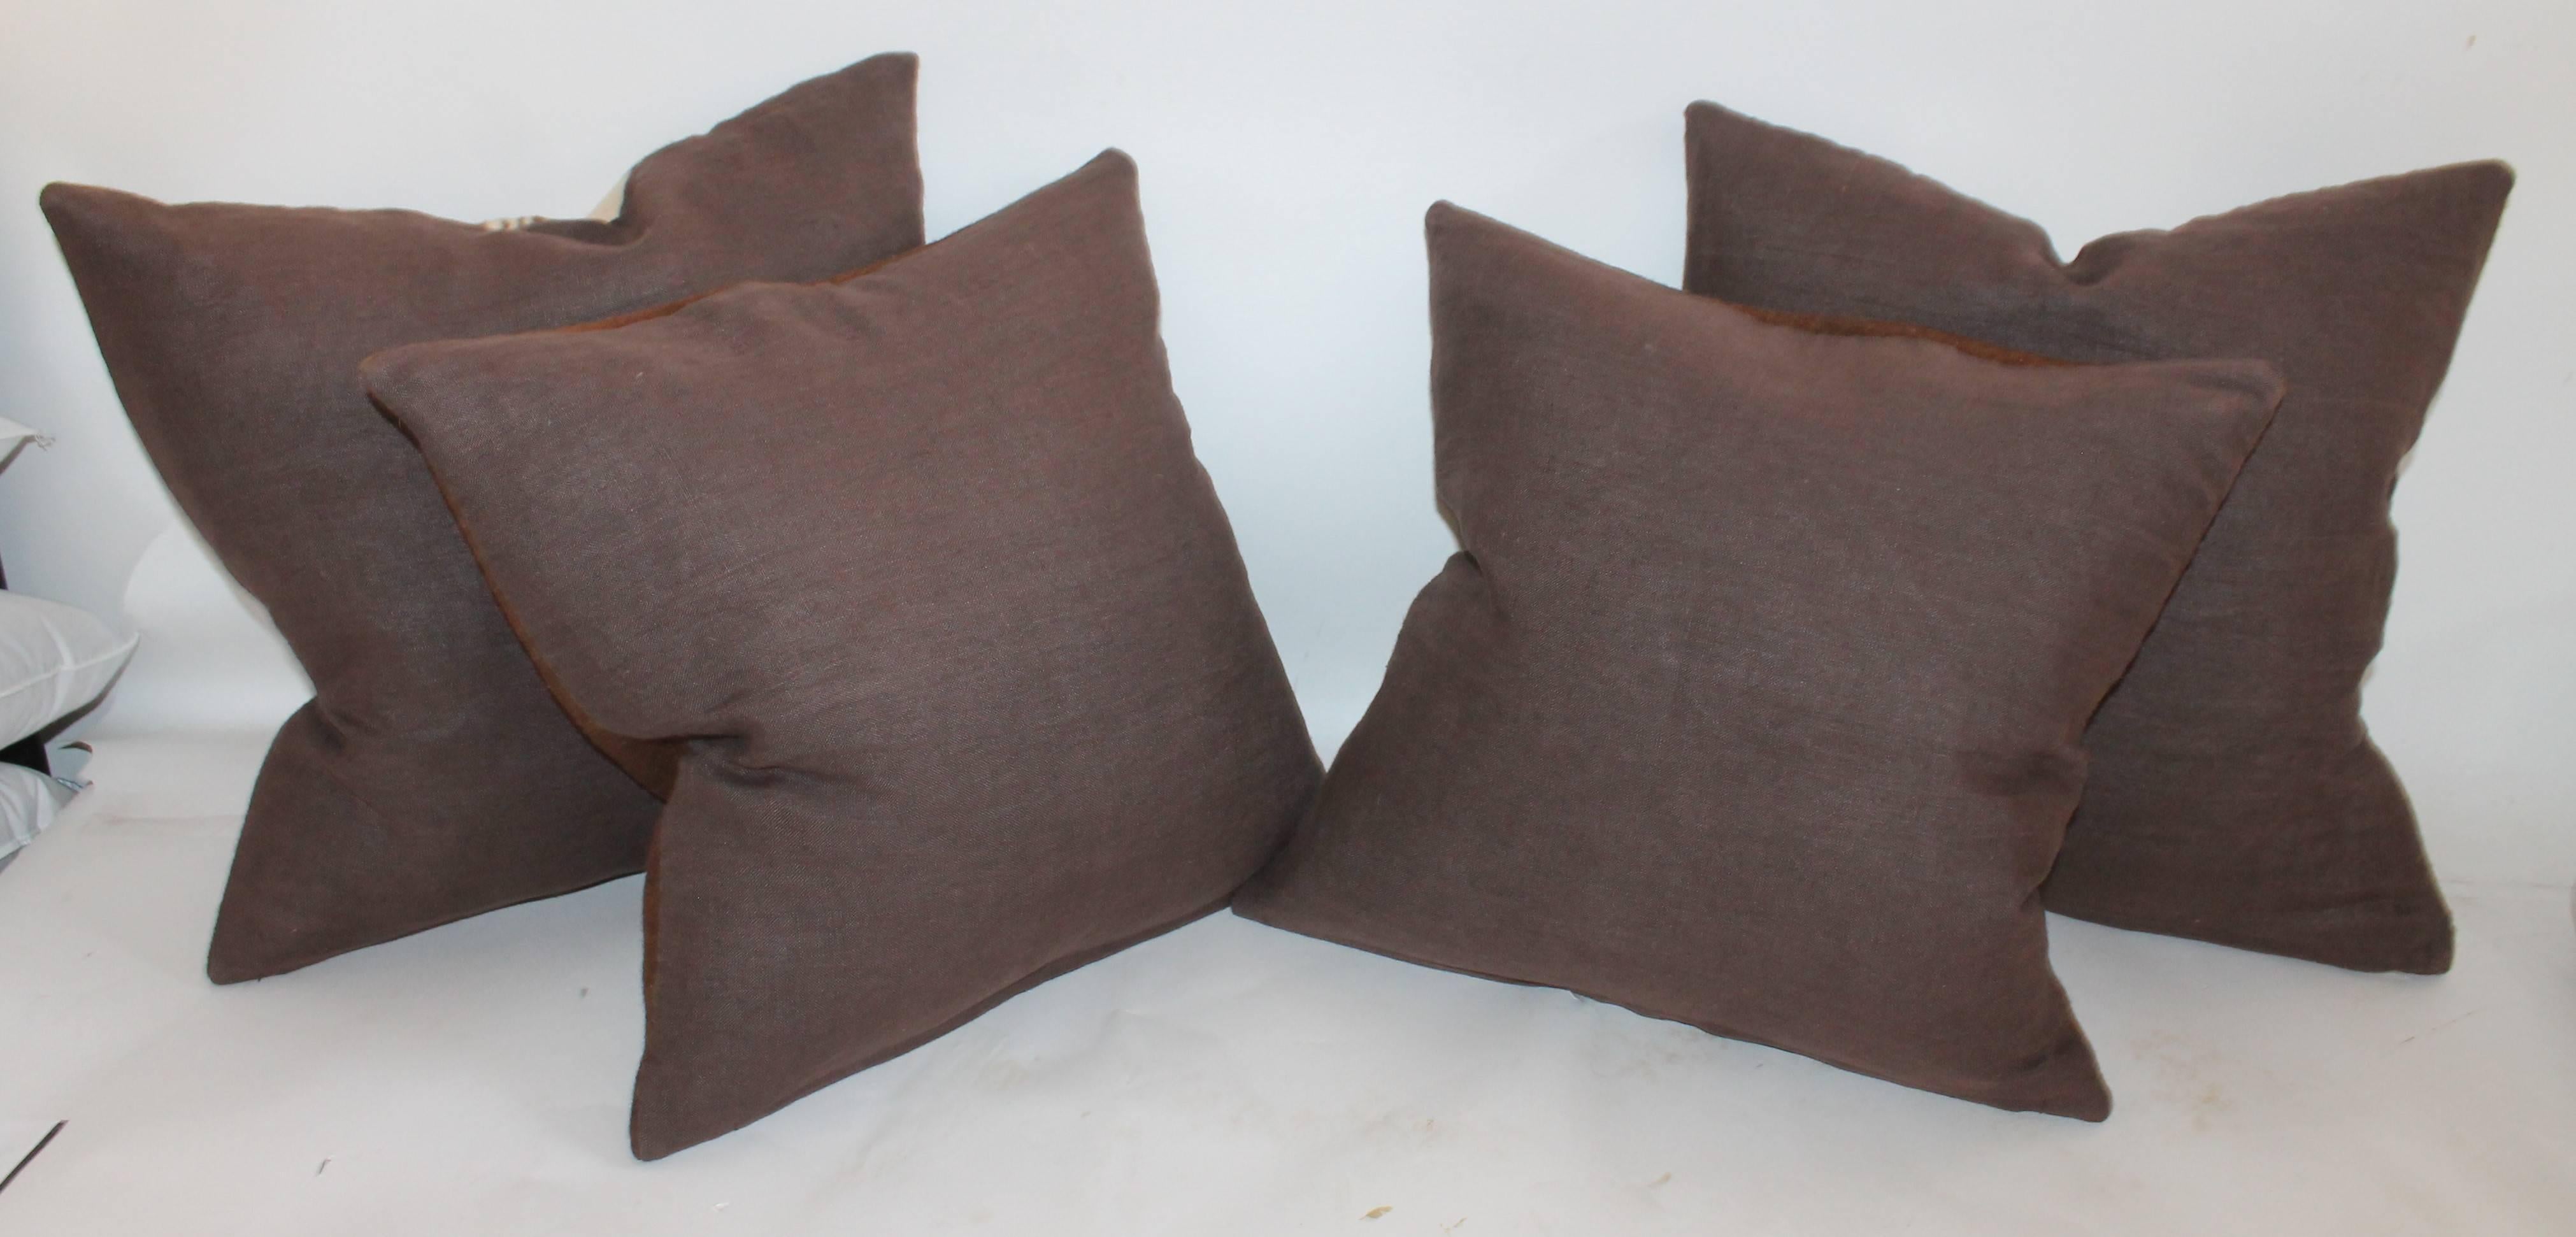 Hand-Woven Striped Woven Wool Weaving Pillows, Pair